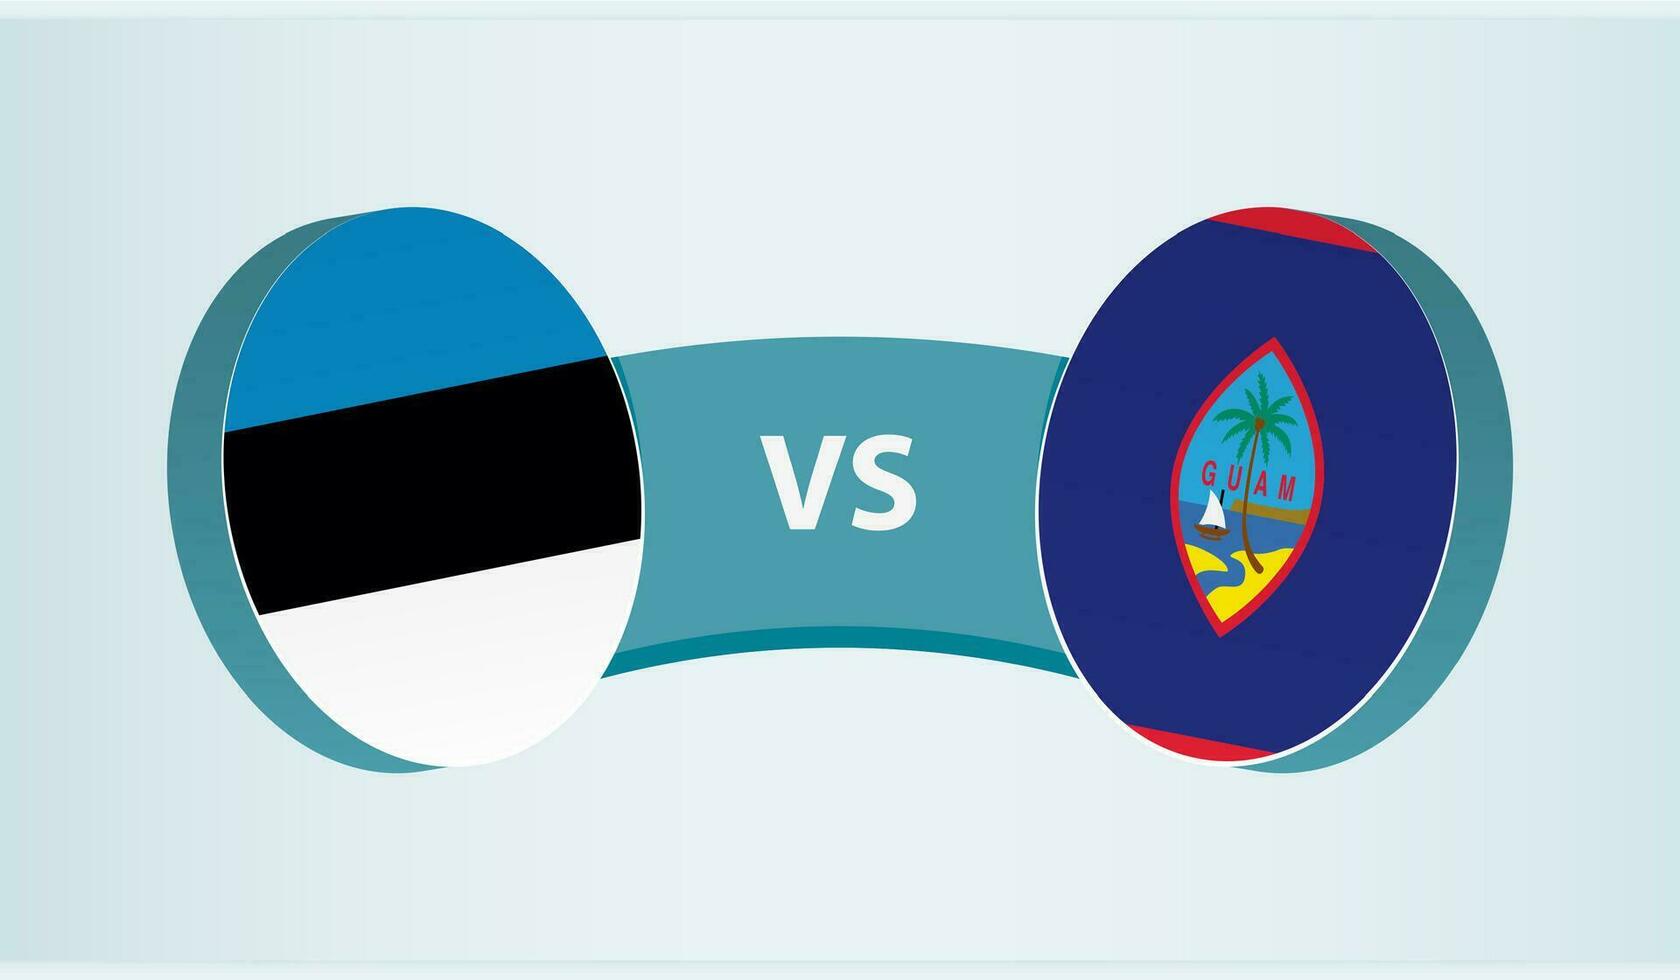 Estonia versus Guam, team sports competition concept. vector